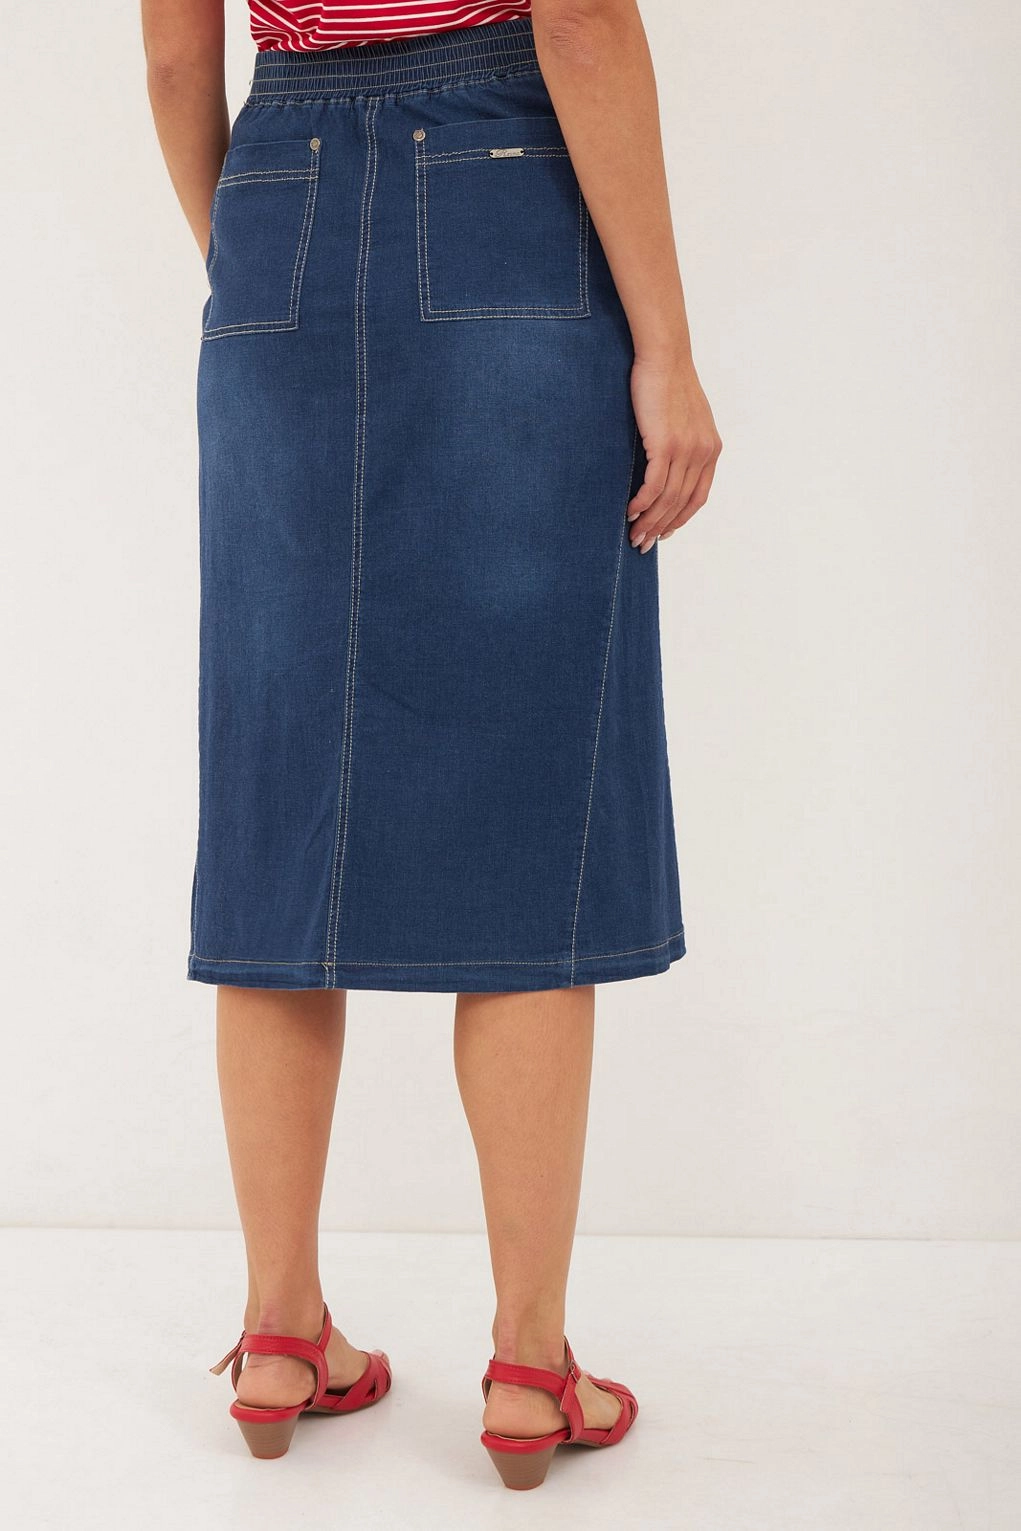 חצאית תות ג'ינס כחול